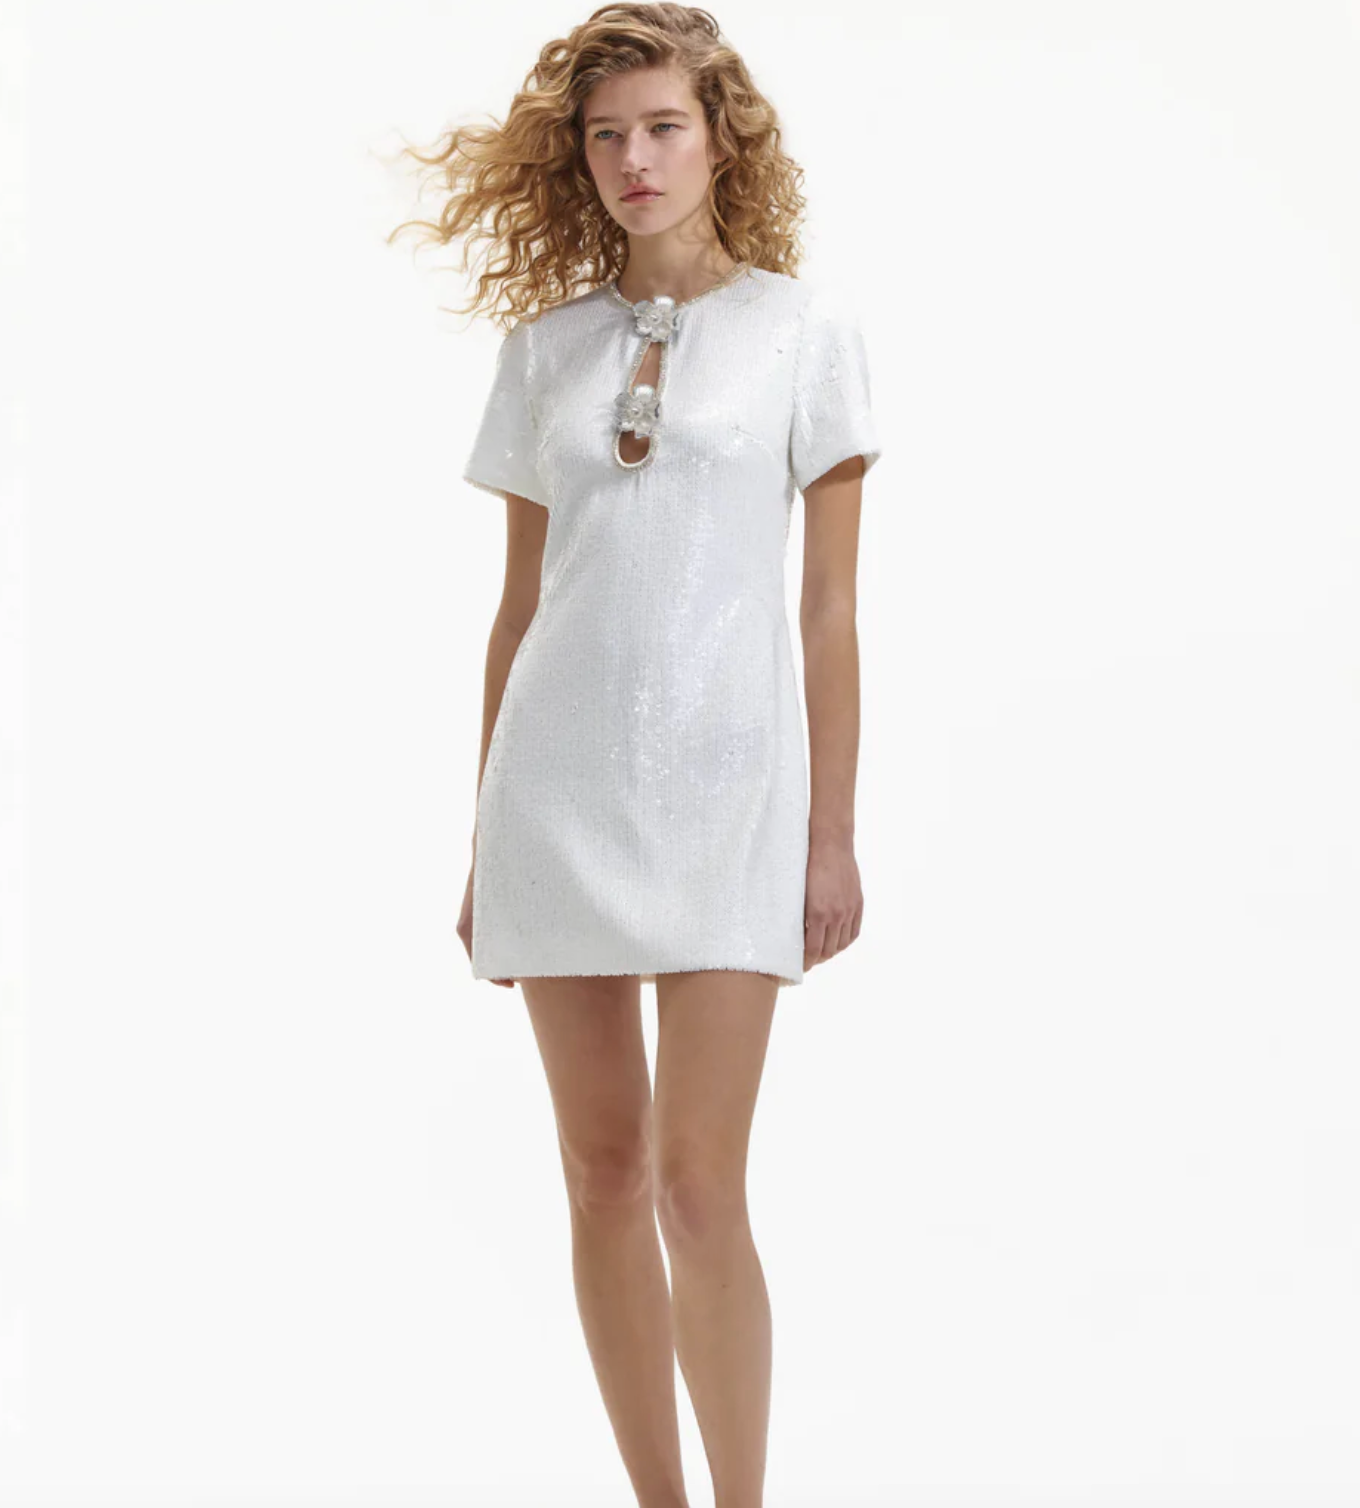 SEQUIN MINI DRESS - White